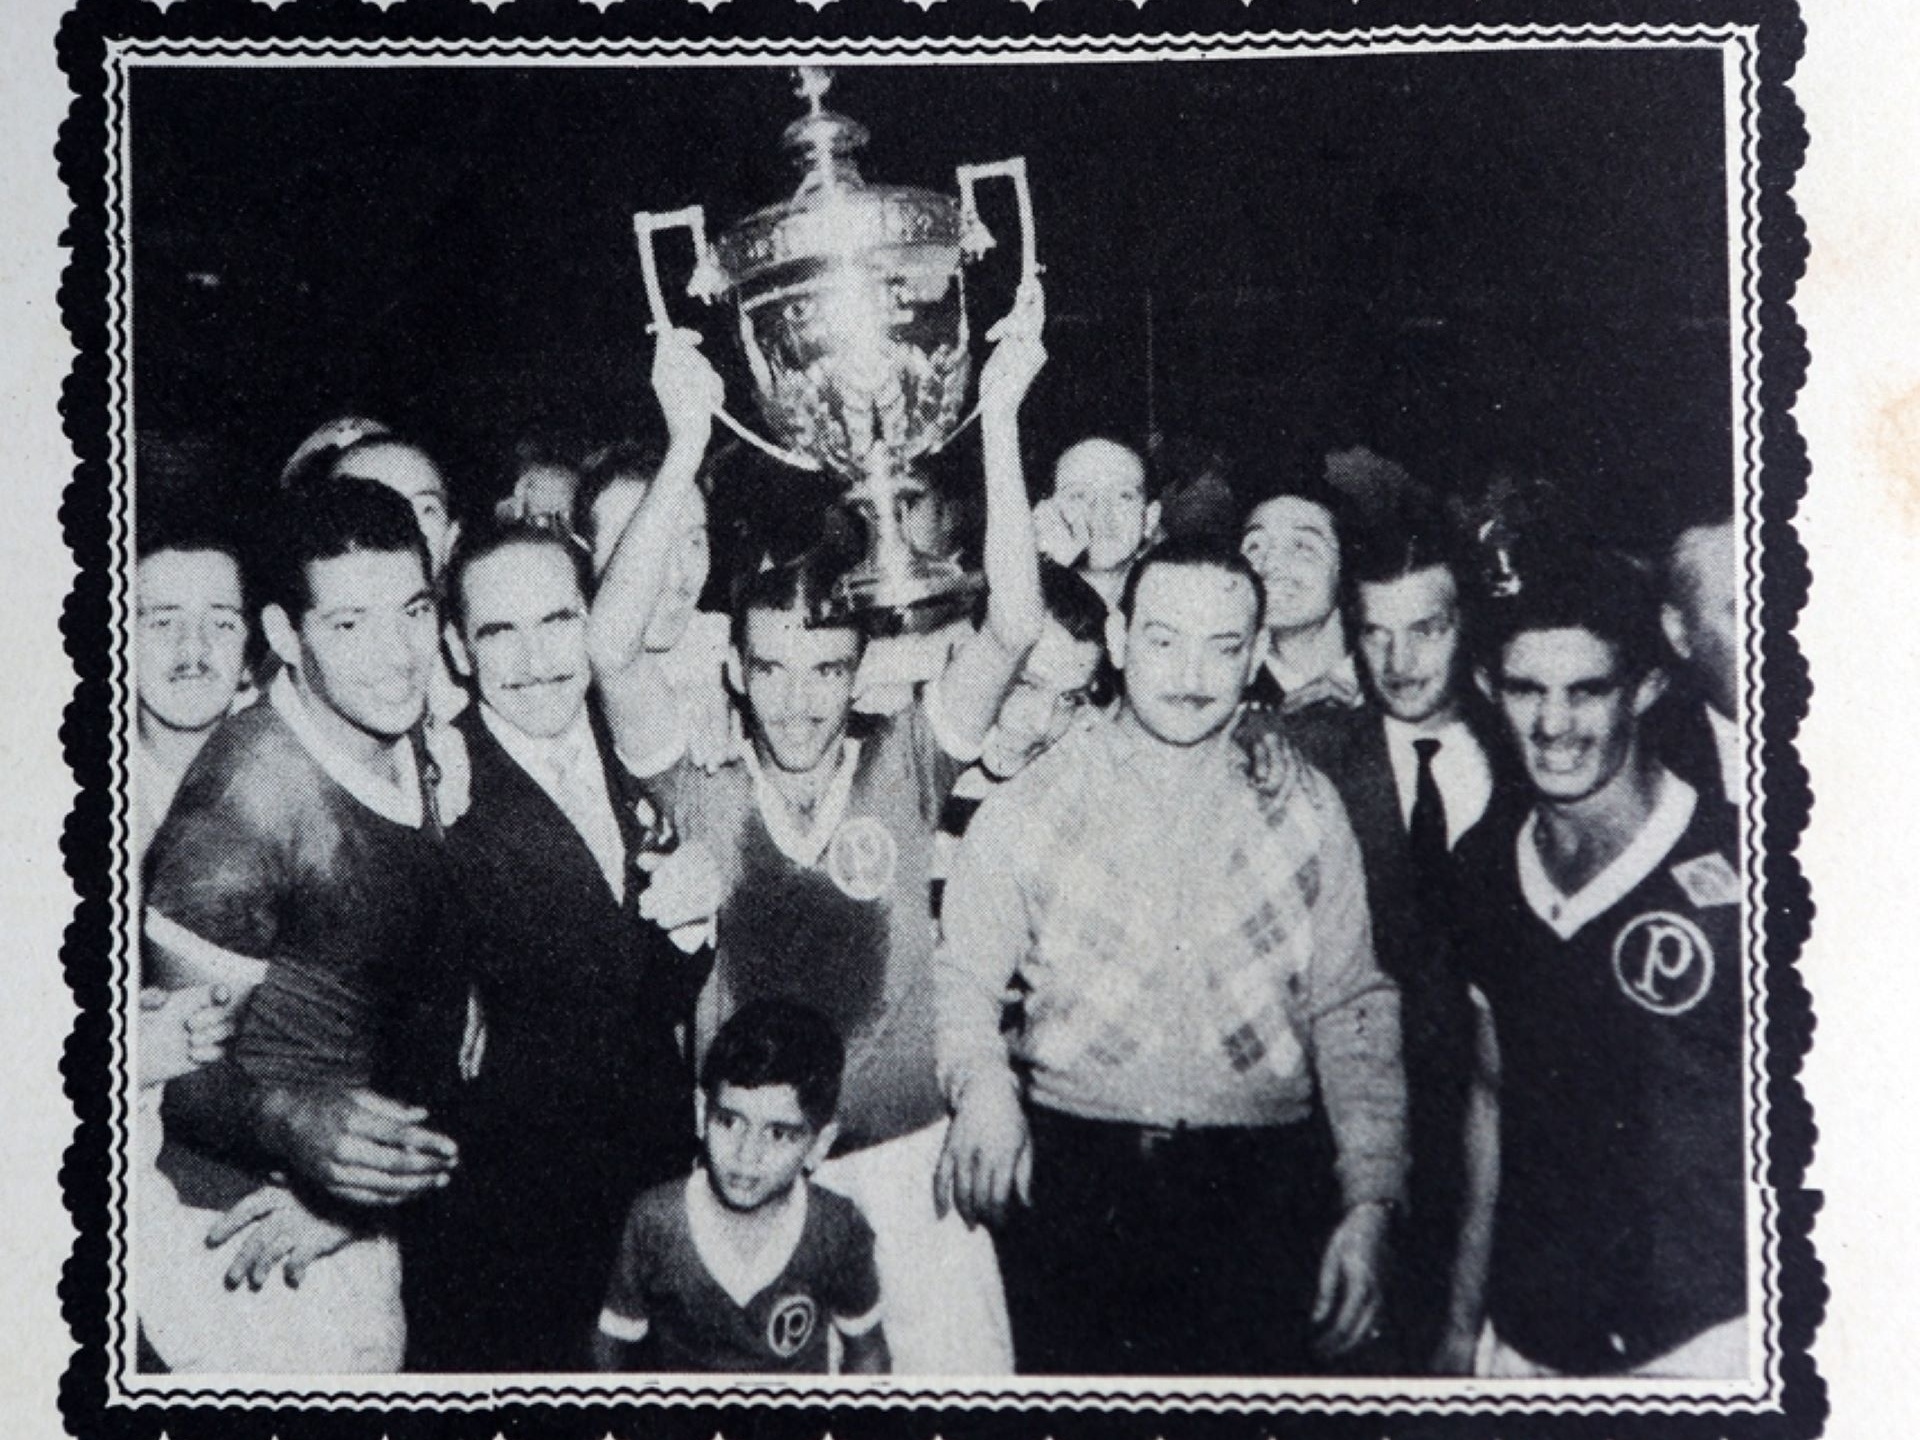 Palmeiras Campeão Mundial de 1951 - N/A